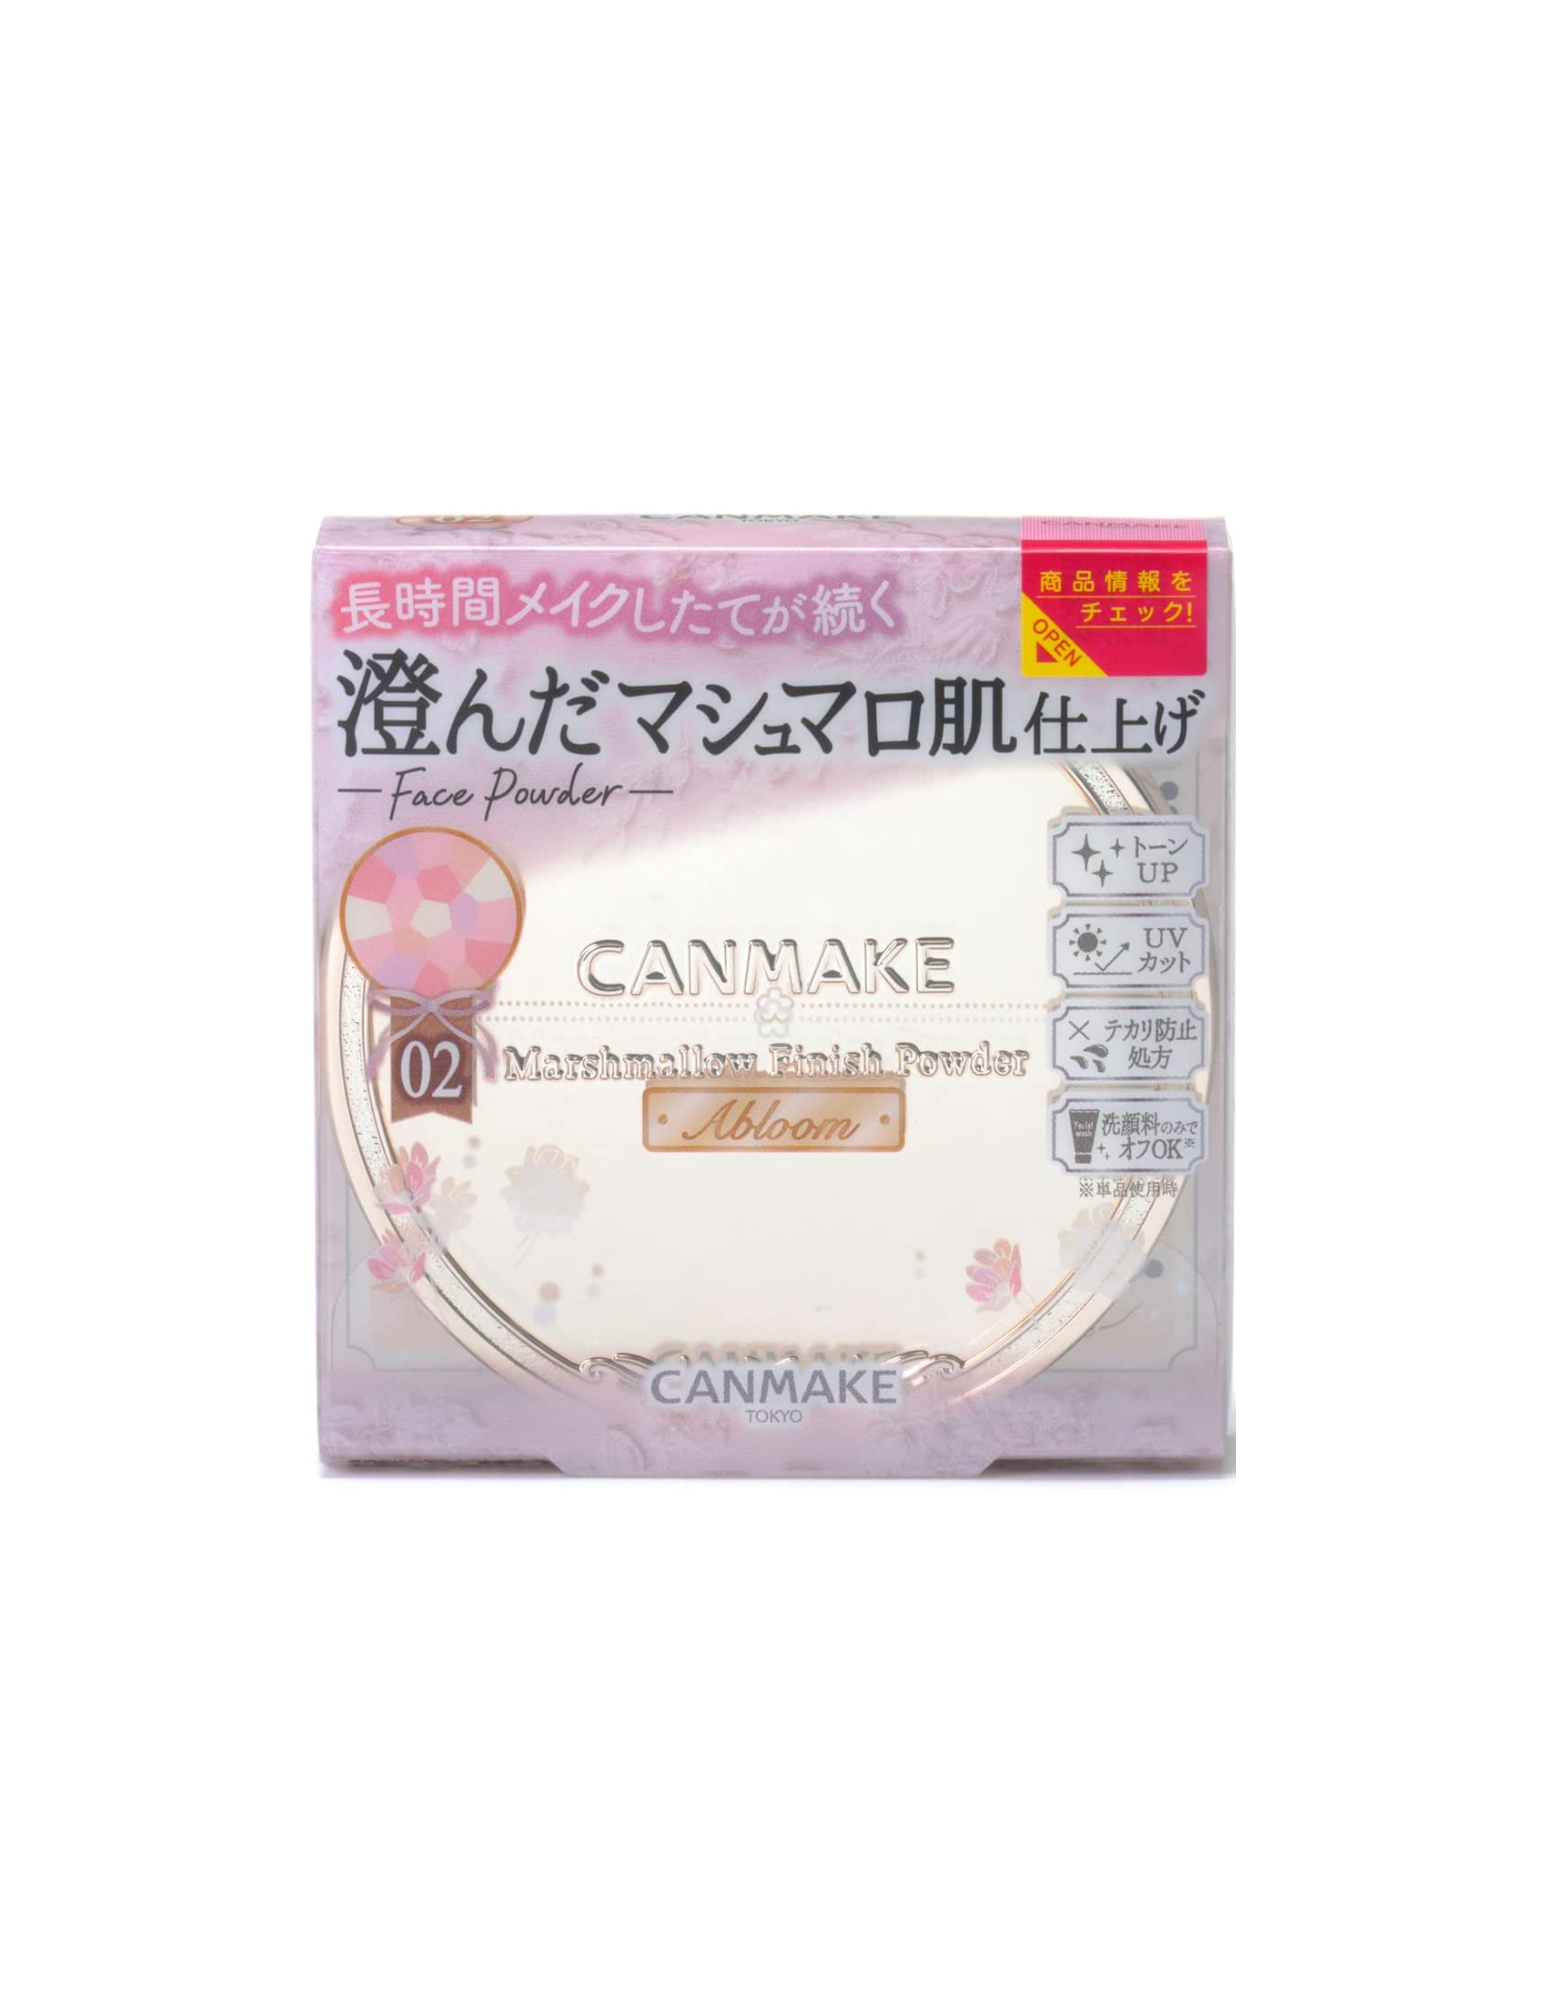 Canmake Marshmallow Finishing Powder Abloom | 02 Sakura Tulle